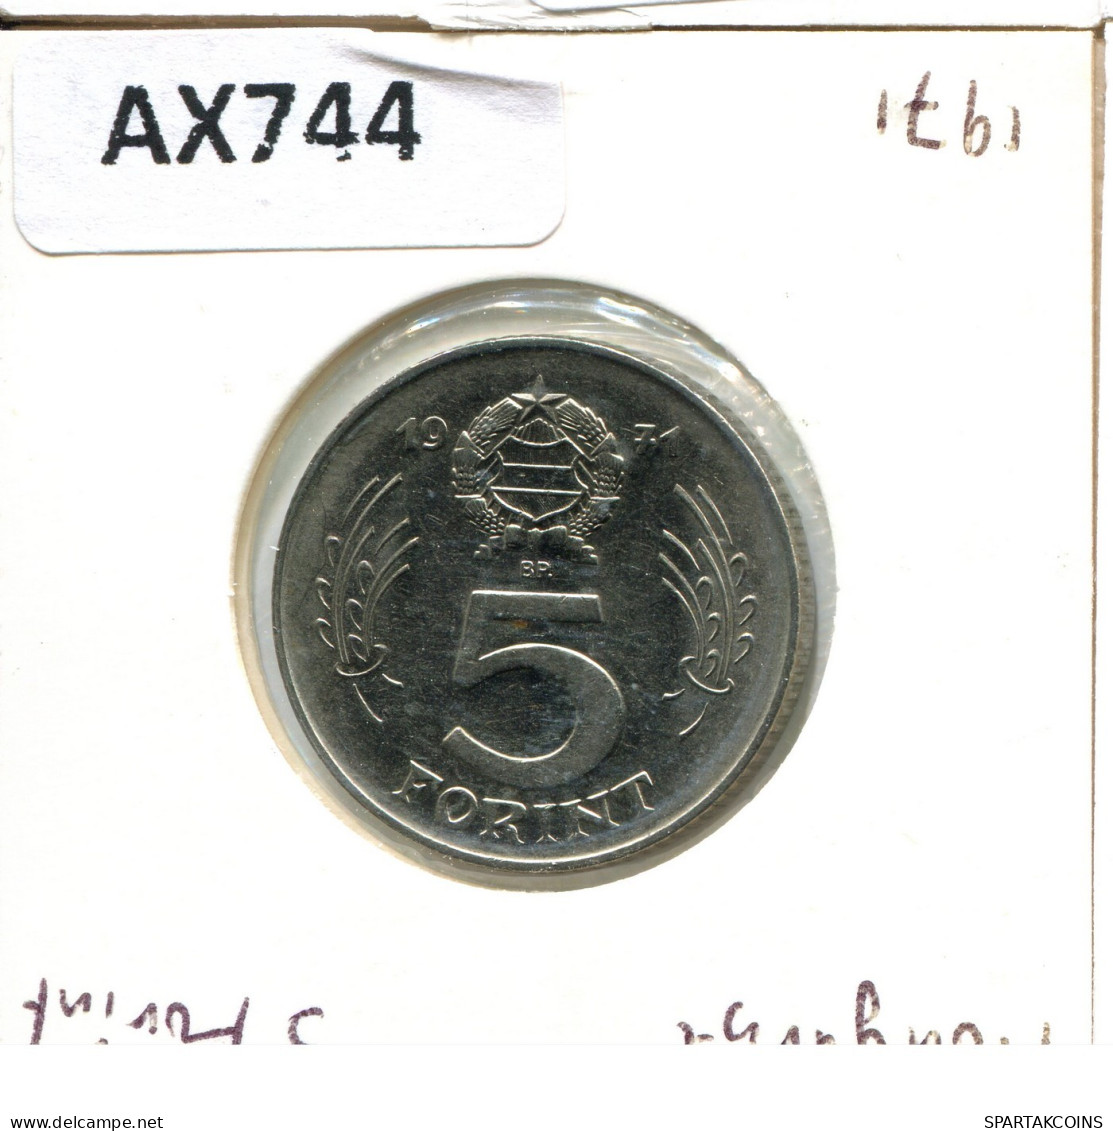 5 FORINT 1971 HUNGRÍA HUNGARY Moneda #AX744.E.A - Hongrie